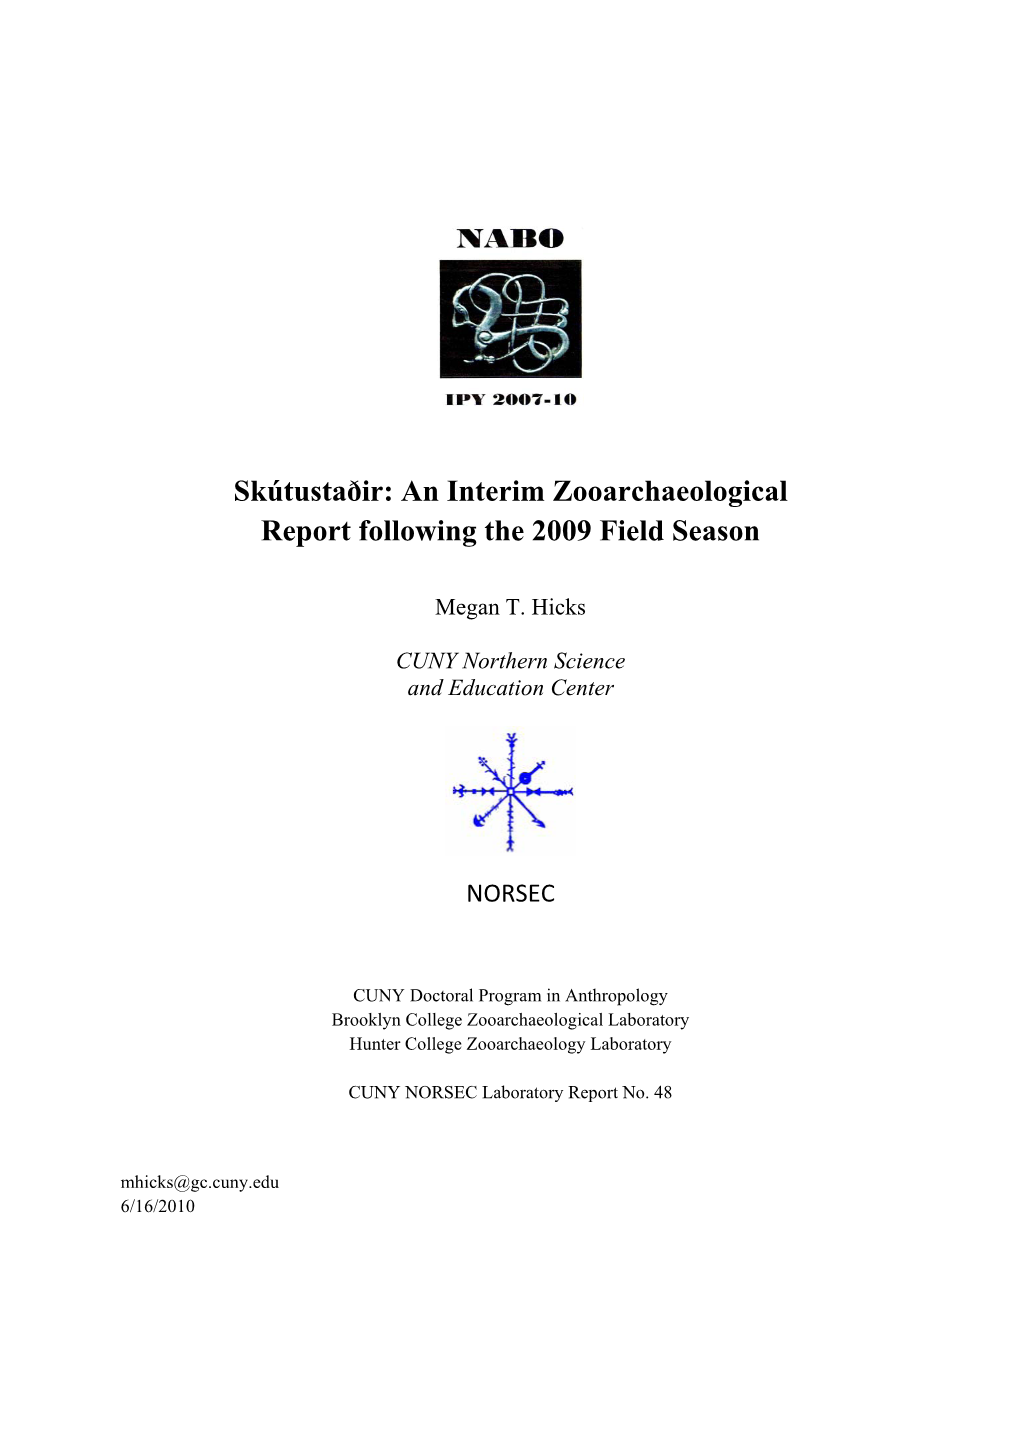 An Interim Zooarchaeological Report Following the 2009 Field Season